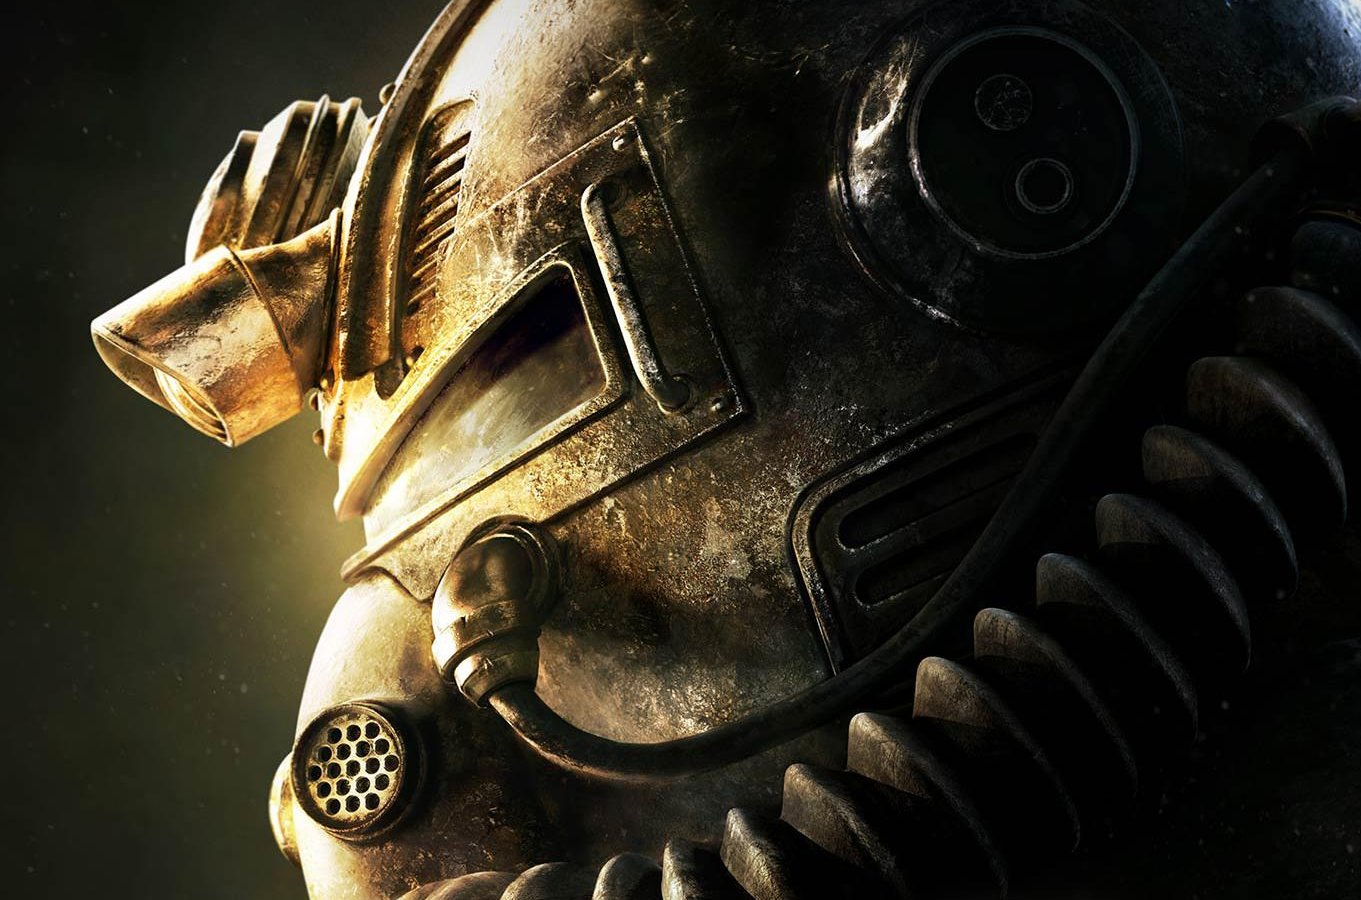 Fallout, ecco i cinque giochi che hanno influenzato maggiormente l’autore